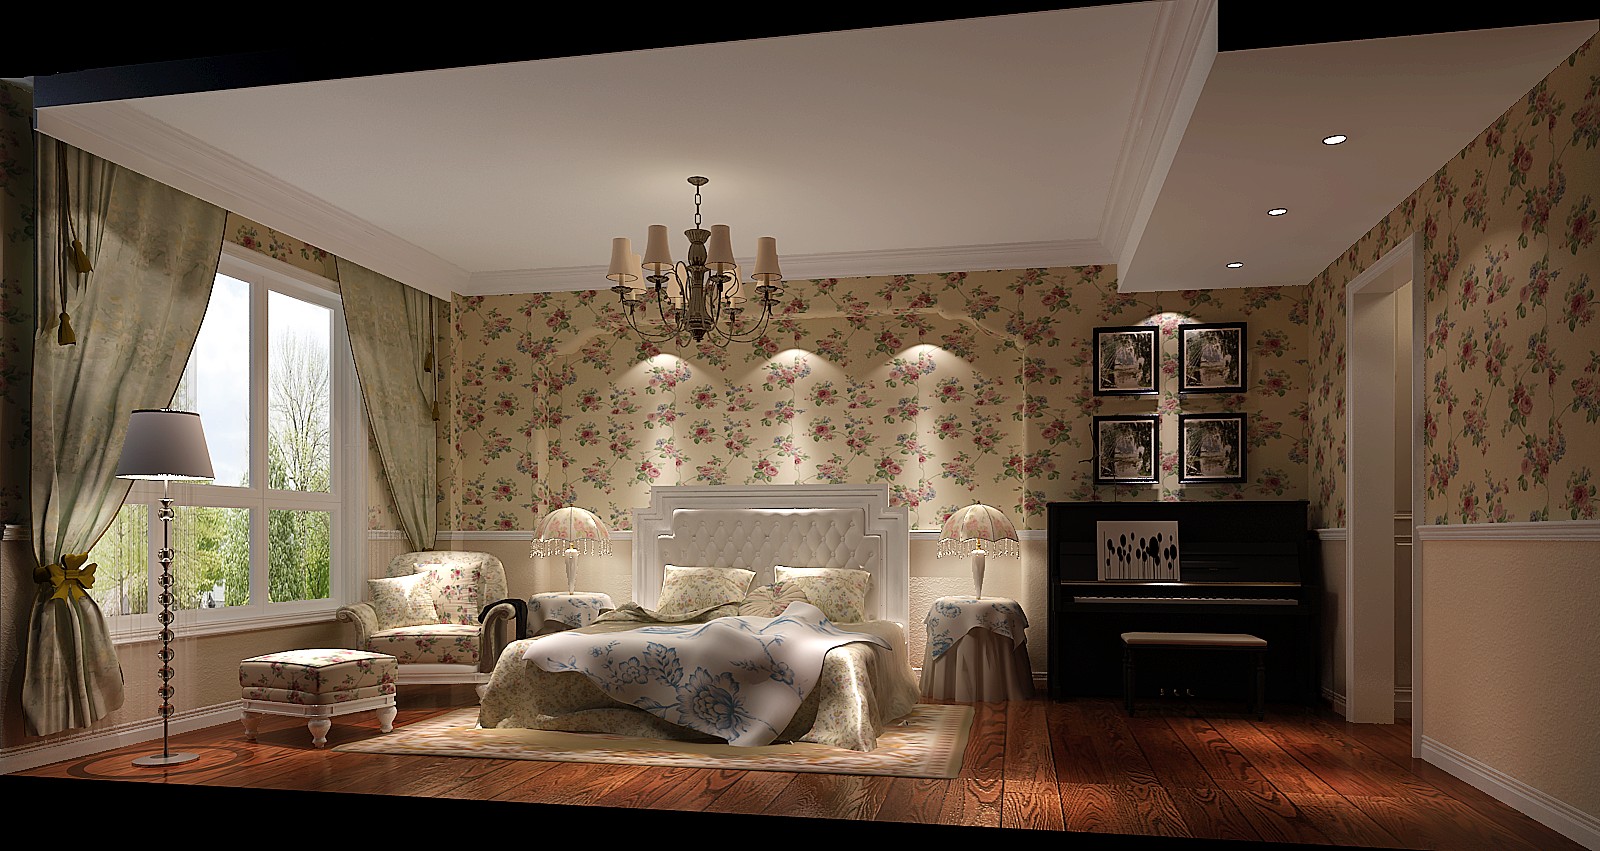 简约 地中海 三居 别墅 白领 80后 小资 欧式 婚房 卧室图片来自北京高度国际装饰设计在世纪城130平地中海公寓的分享